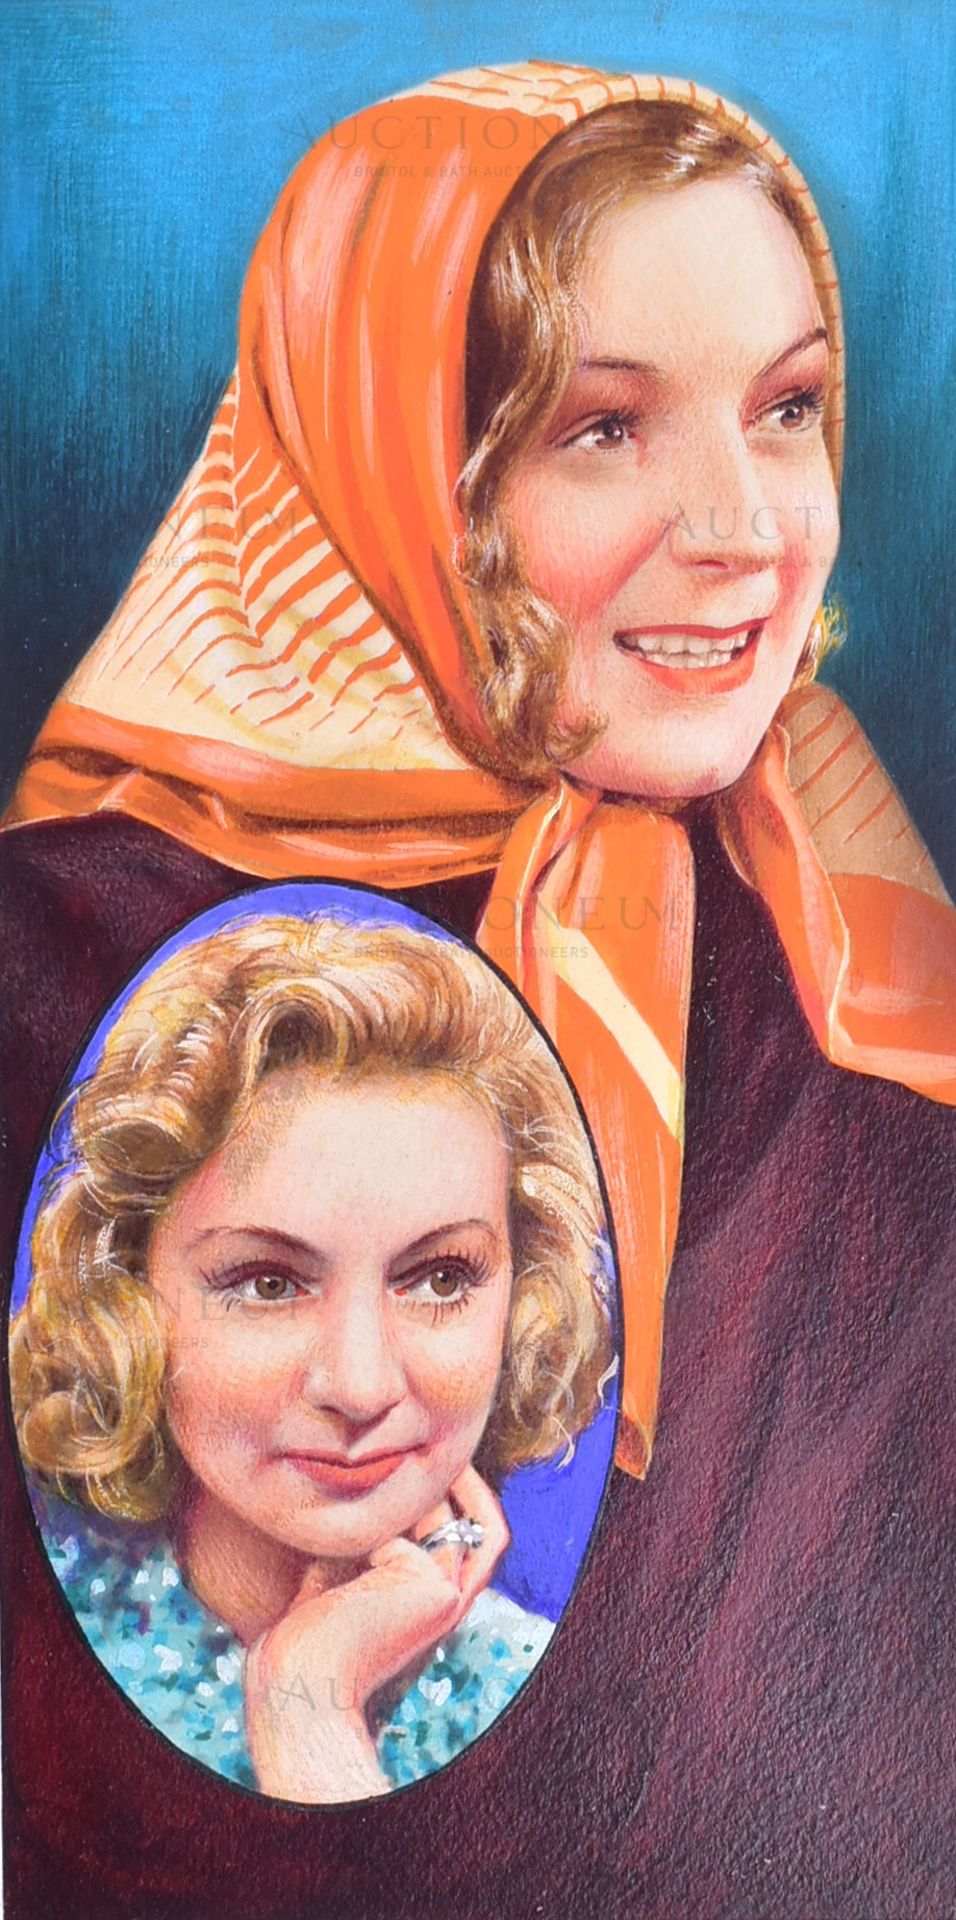 OGDEN'S 1938 - ORIGINAL CIGARETTE CARD ARTWORK